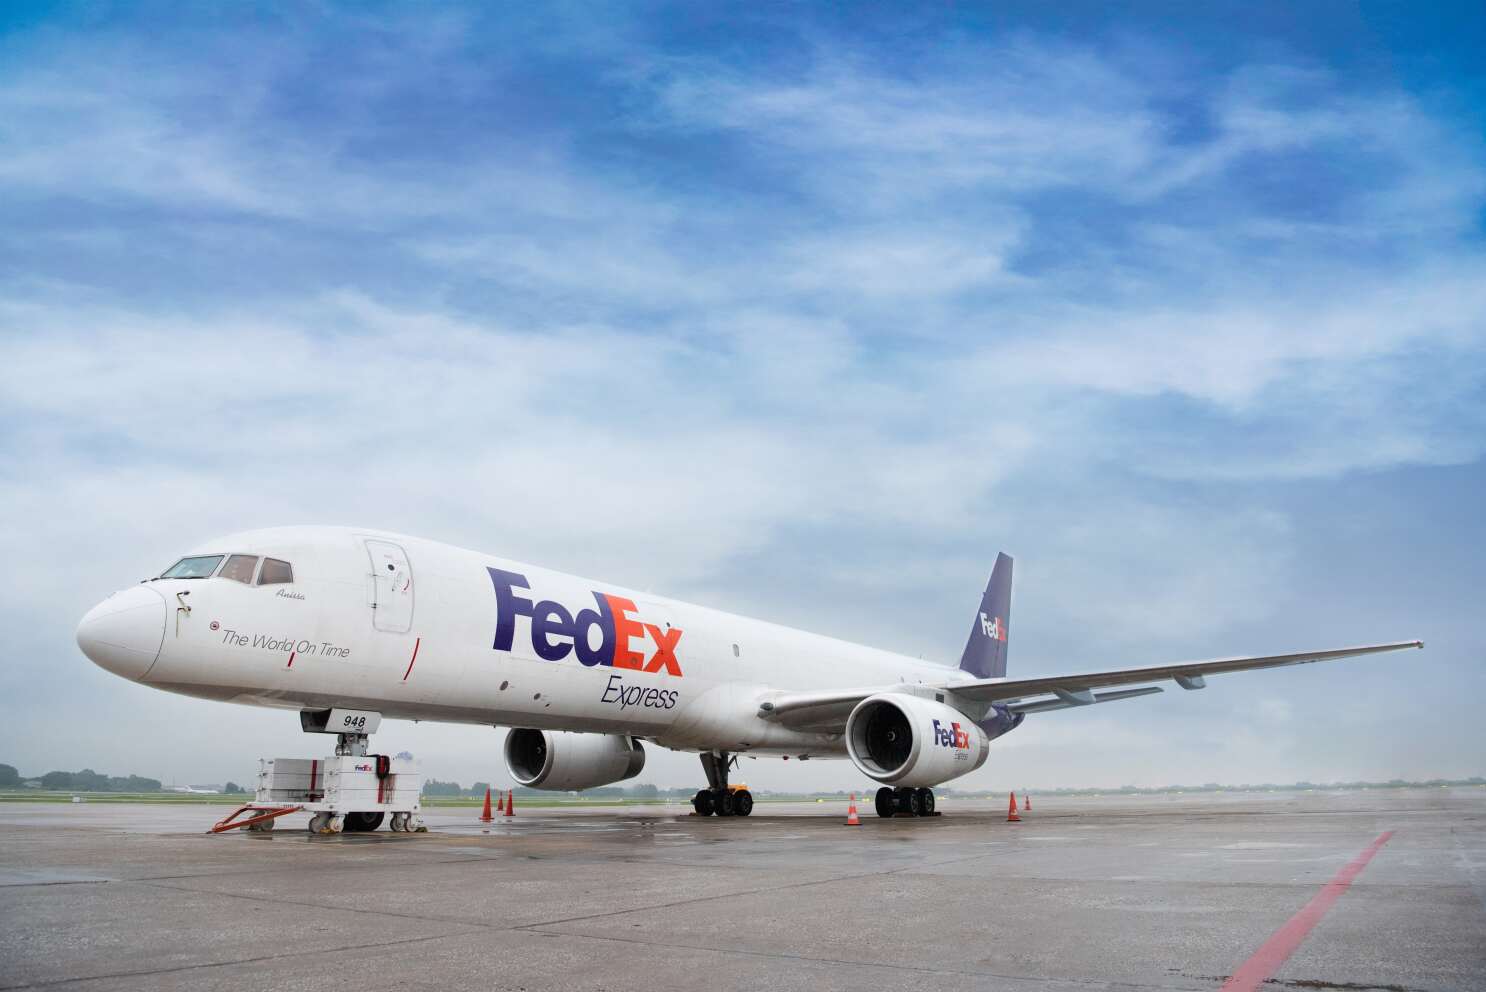 Emergency Declared At Delhi Airport Following A Bird Strike On Dubai-Bound FedEx Aircraft